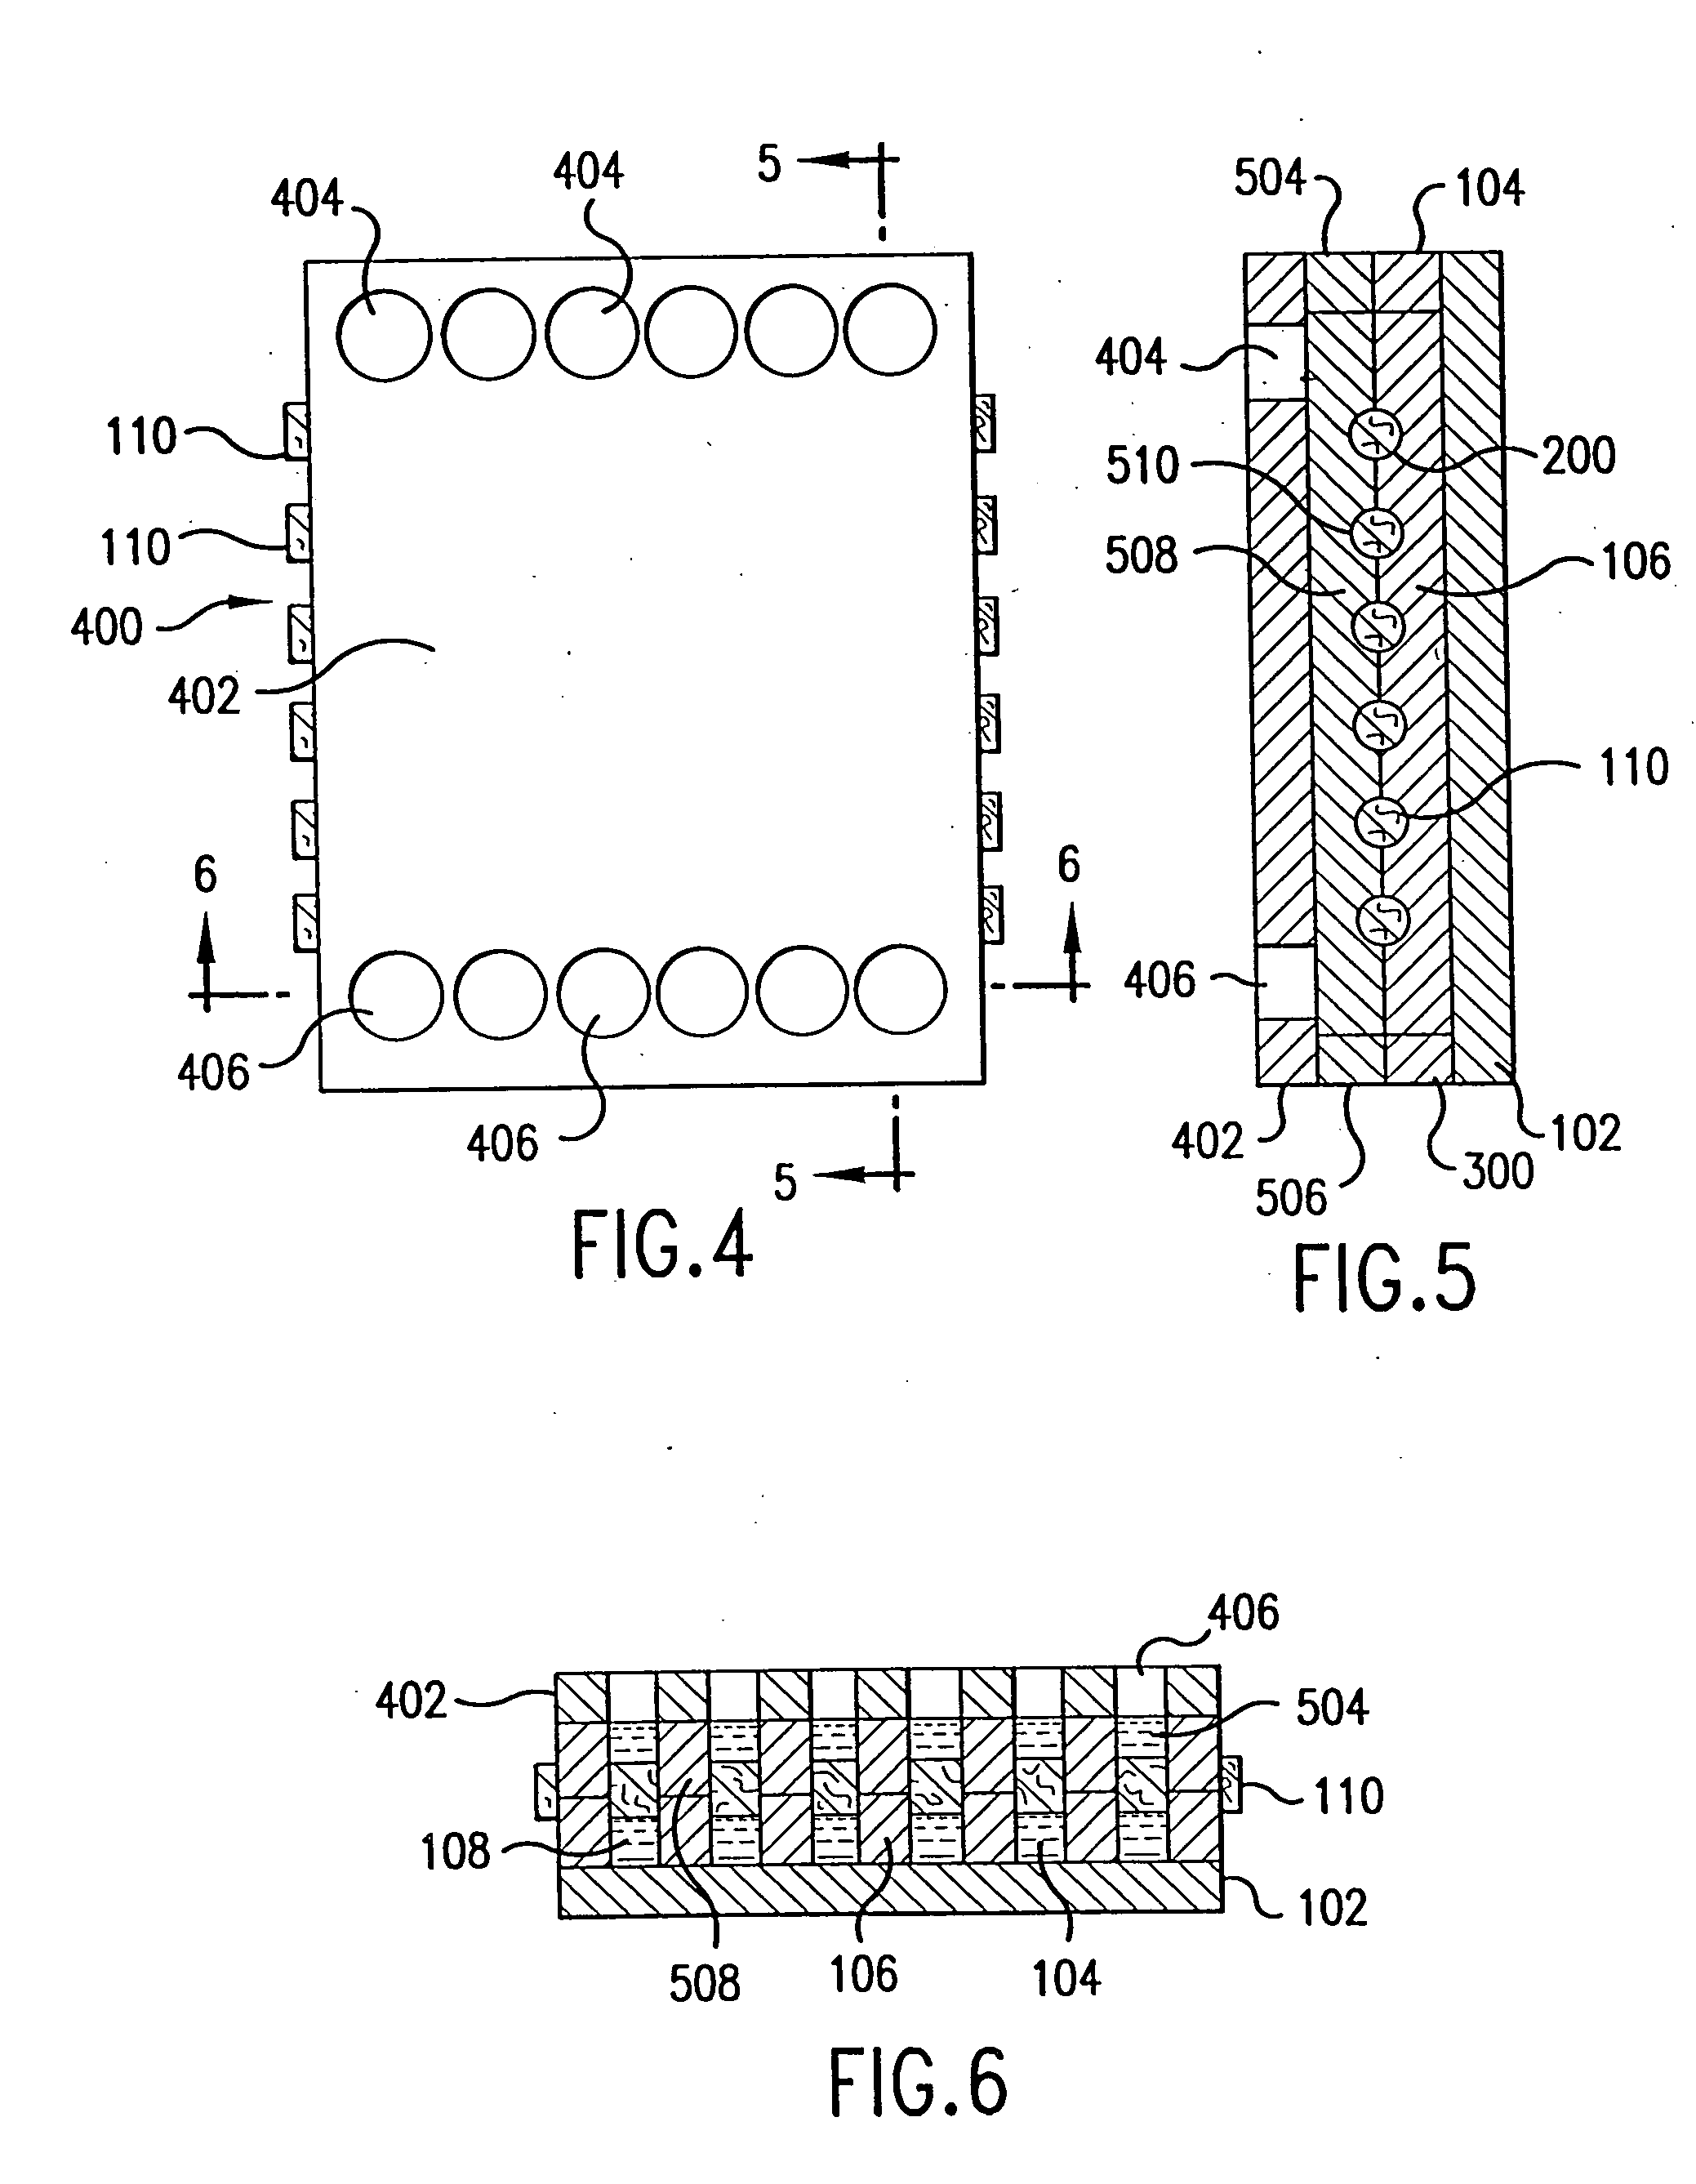 Integrated optics fiber array